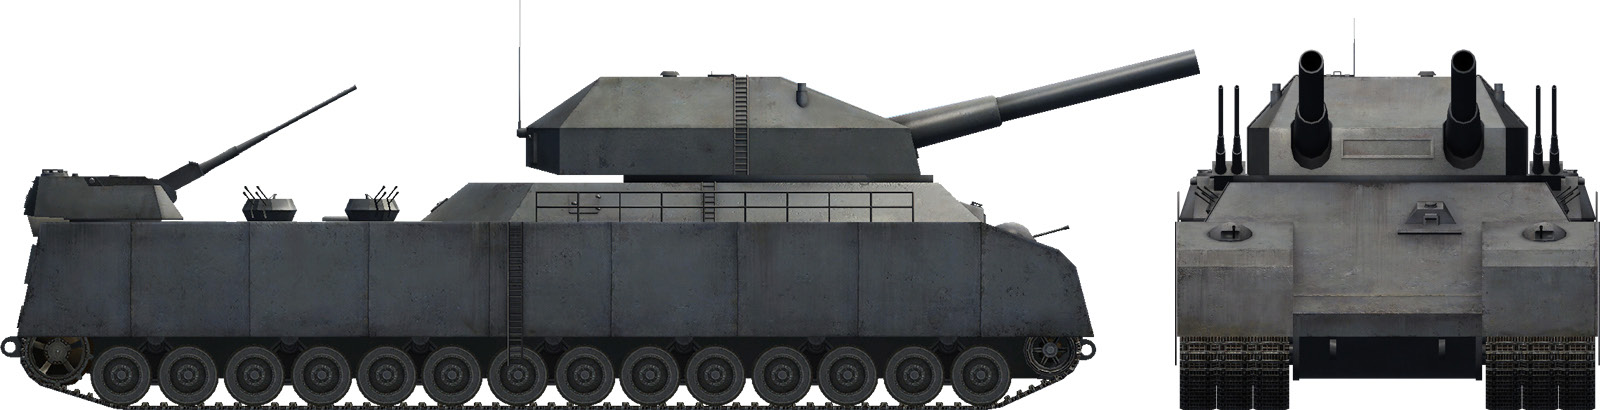 Большой немецкий танк. Танк p1000 Ratte. Немецкий сверхтяжелый танк крыса. Танк Landkreuzer p1000 Ratte. Танк РАТТЕ П 1000.